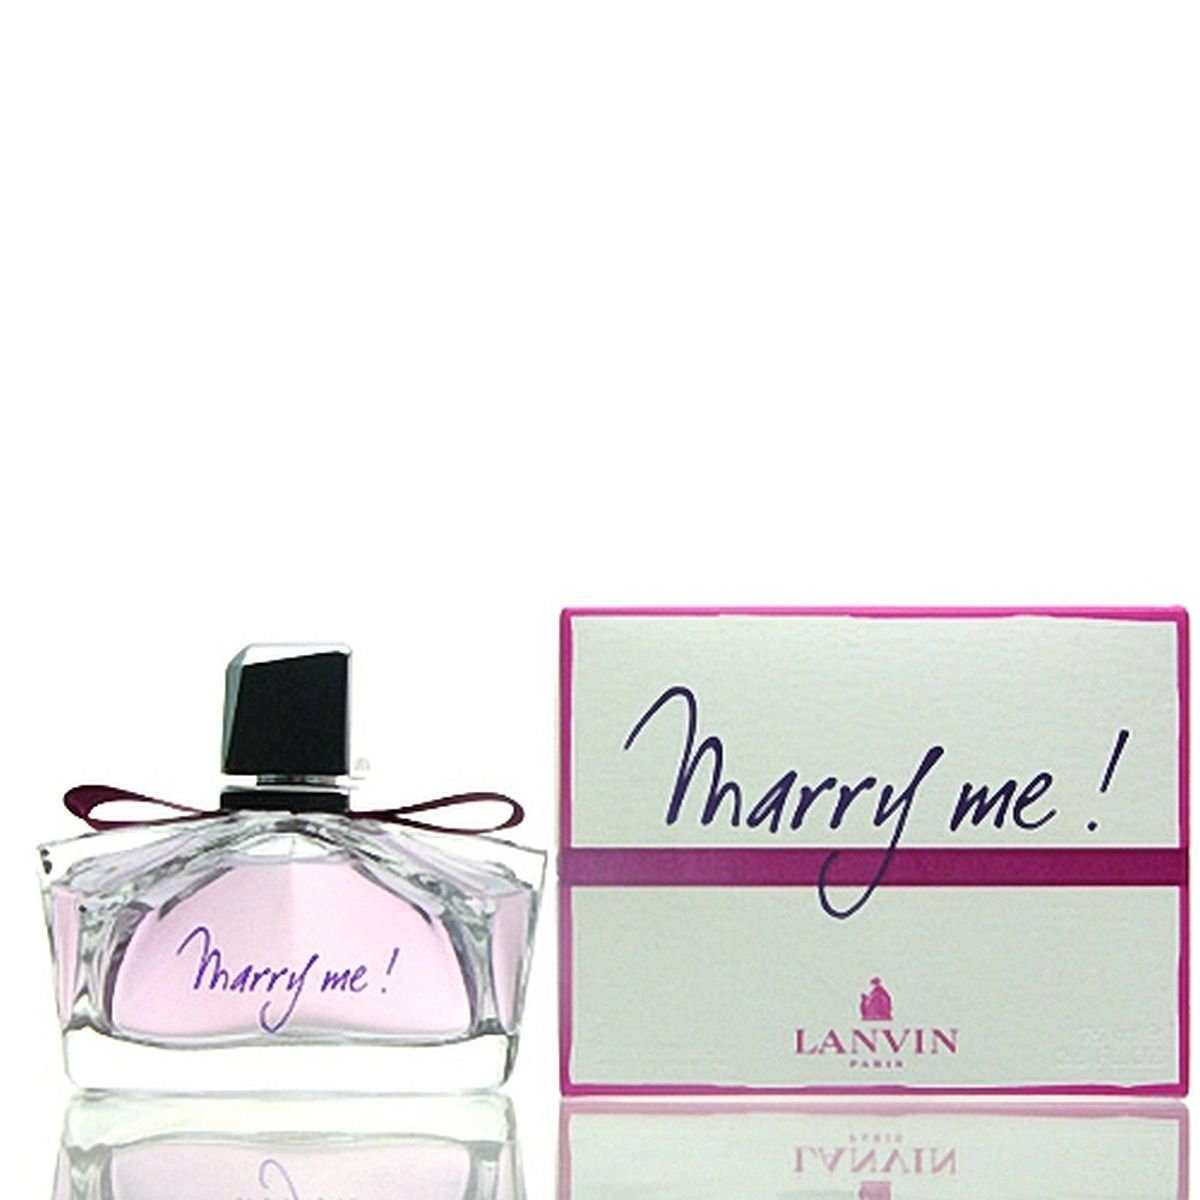 Me! Marry de 75 ml Parfum LANVIN de Eau Lanvin Parfum Eau